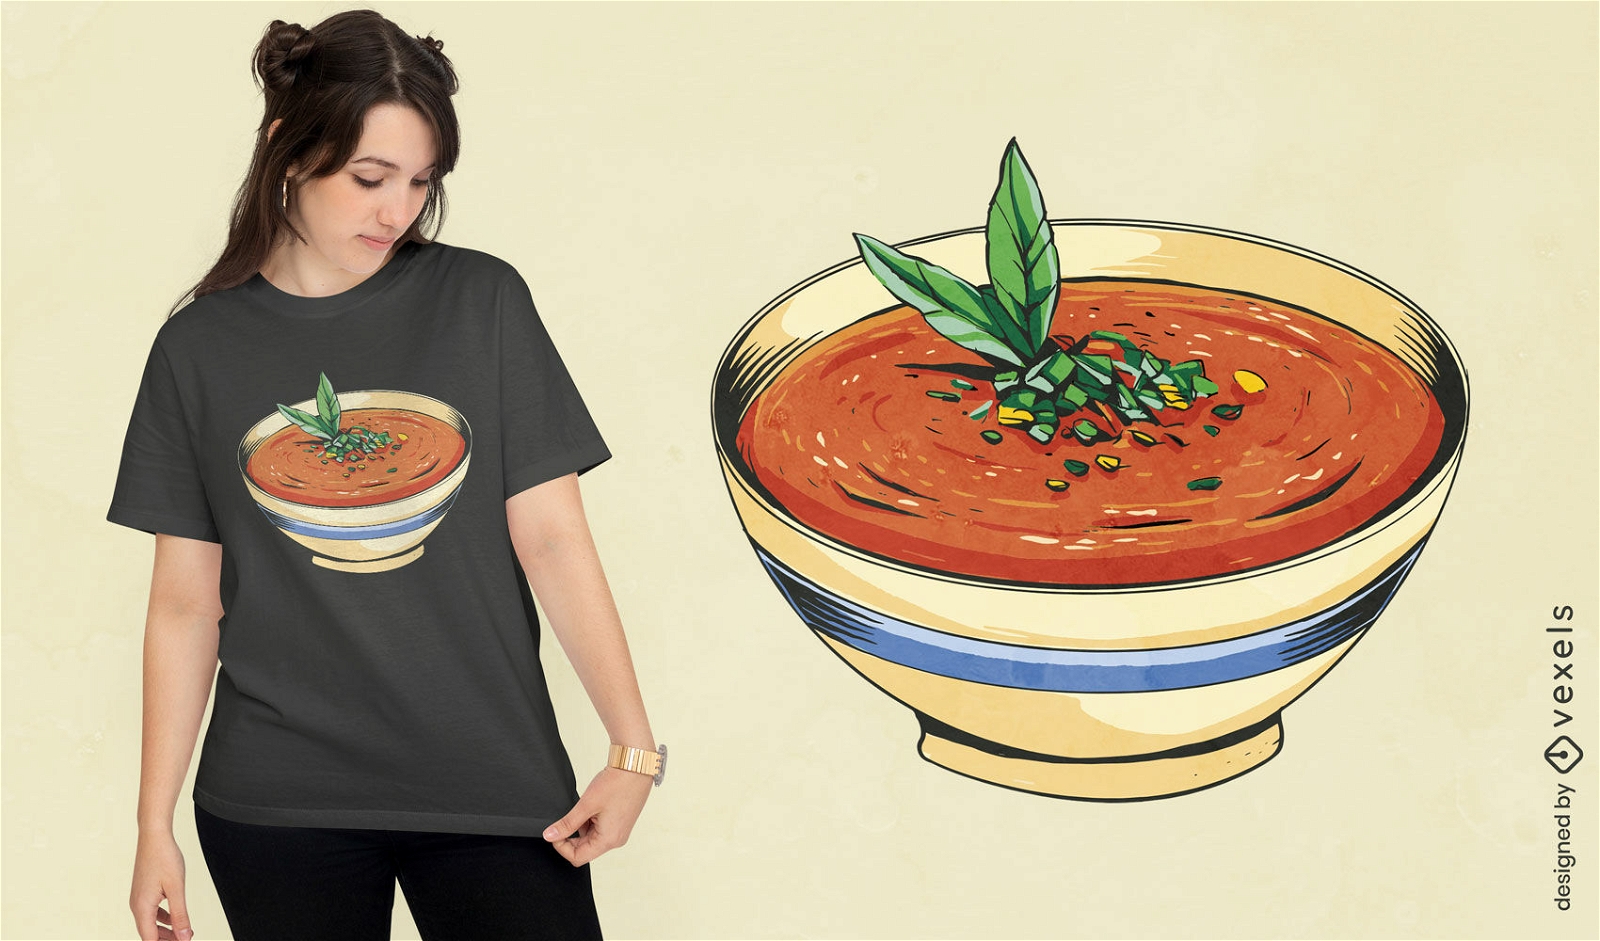 Dise?o de camiseta de sopa de gazpacho.